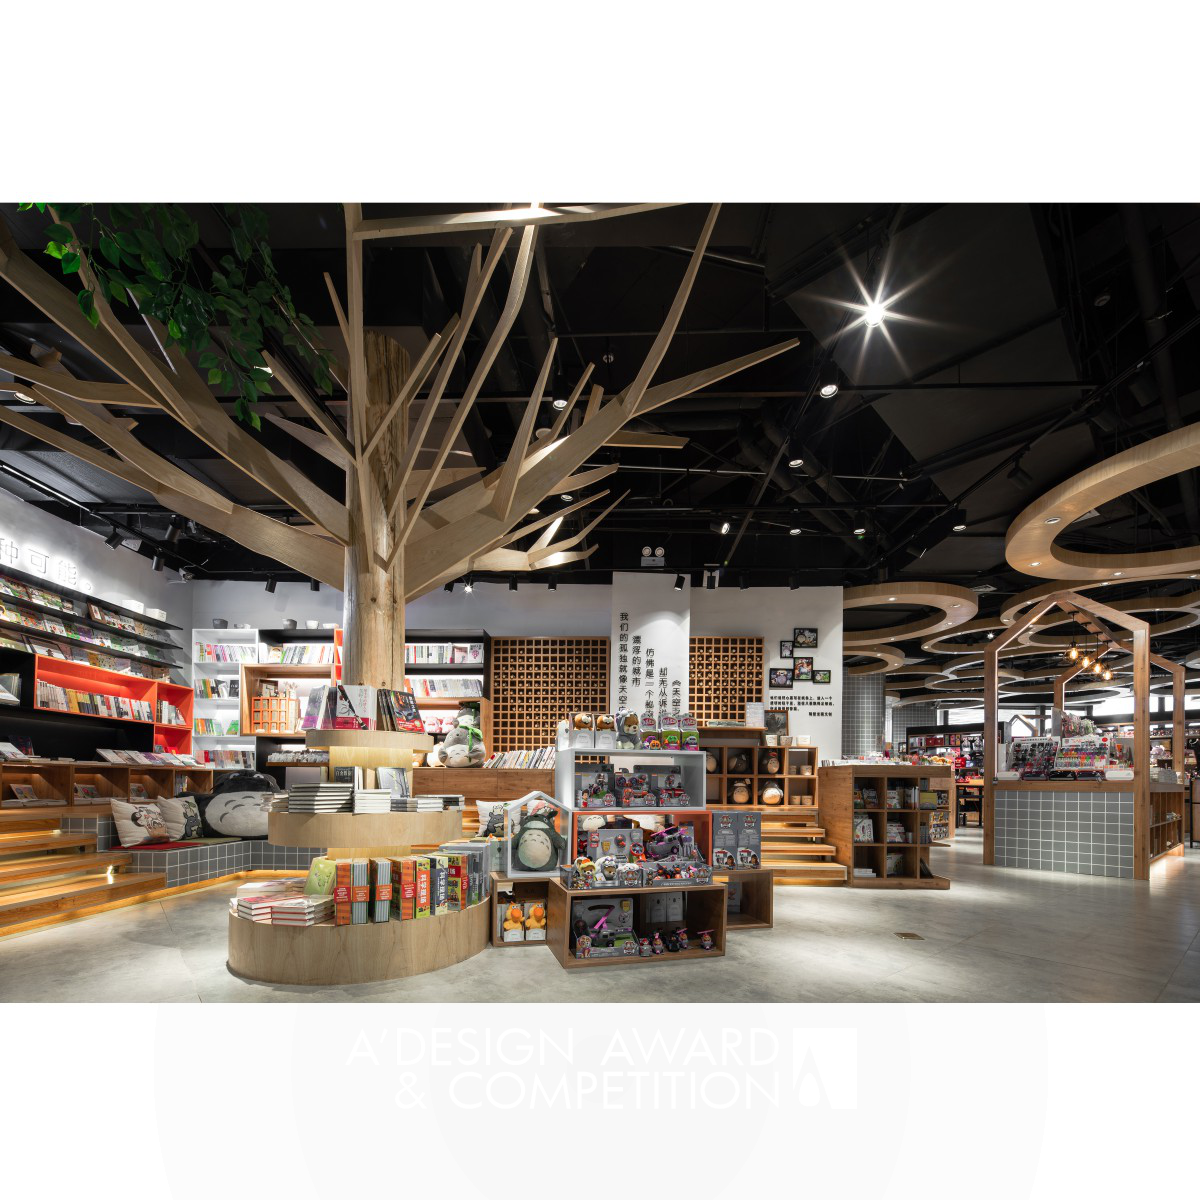 GaBe Totoro Retail Space by Hao Fan & Longhui Lee